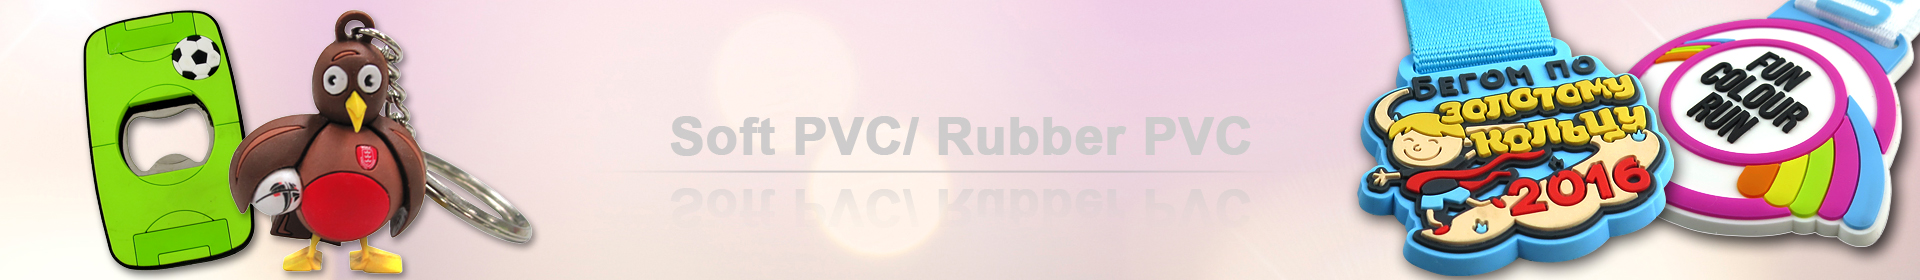 Flexible PVC souple peut être utilisé pour créer des boucles d’oreilles en PVC de mode avec n’importe quel design